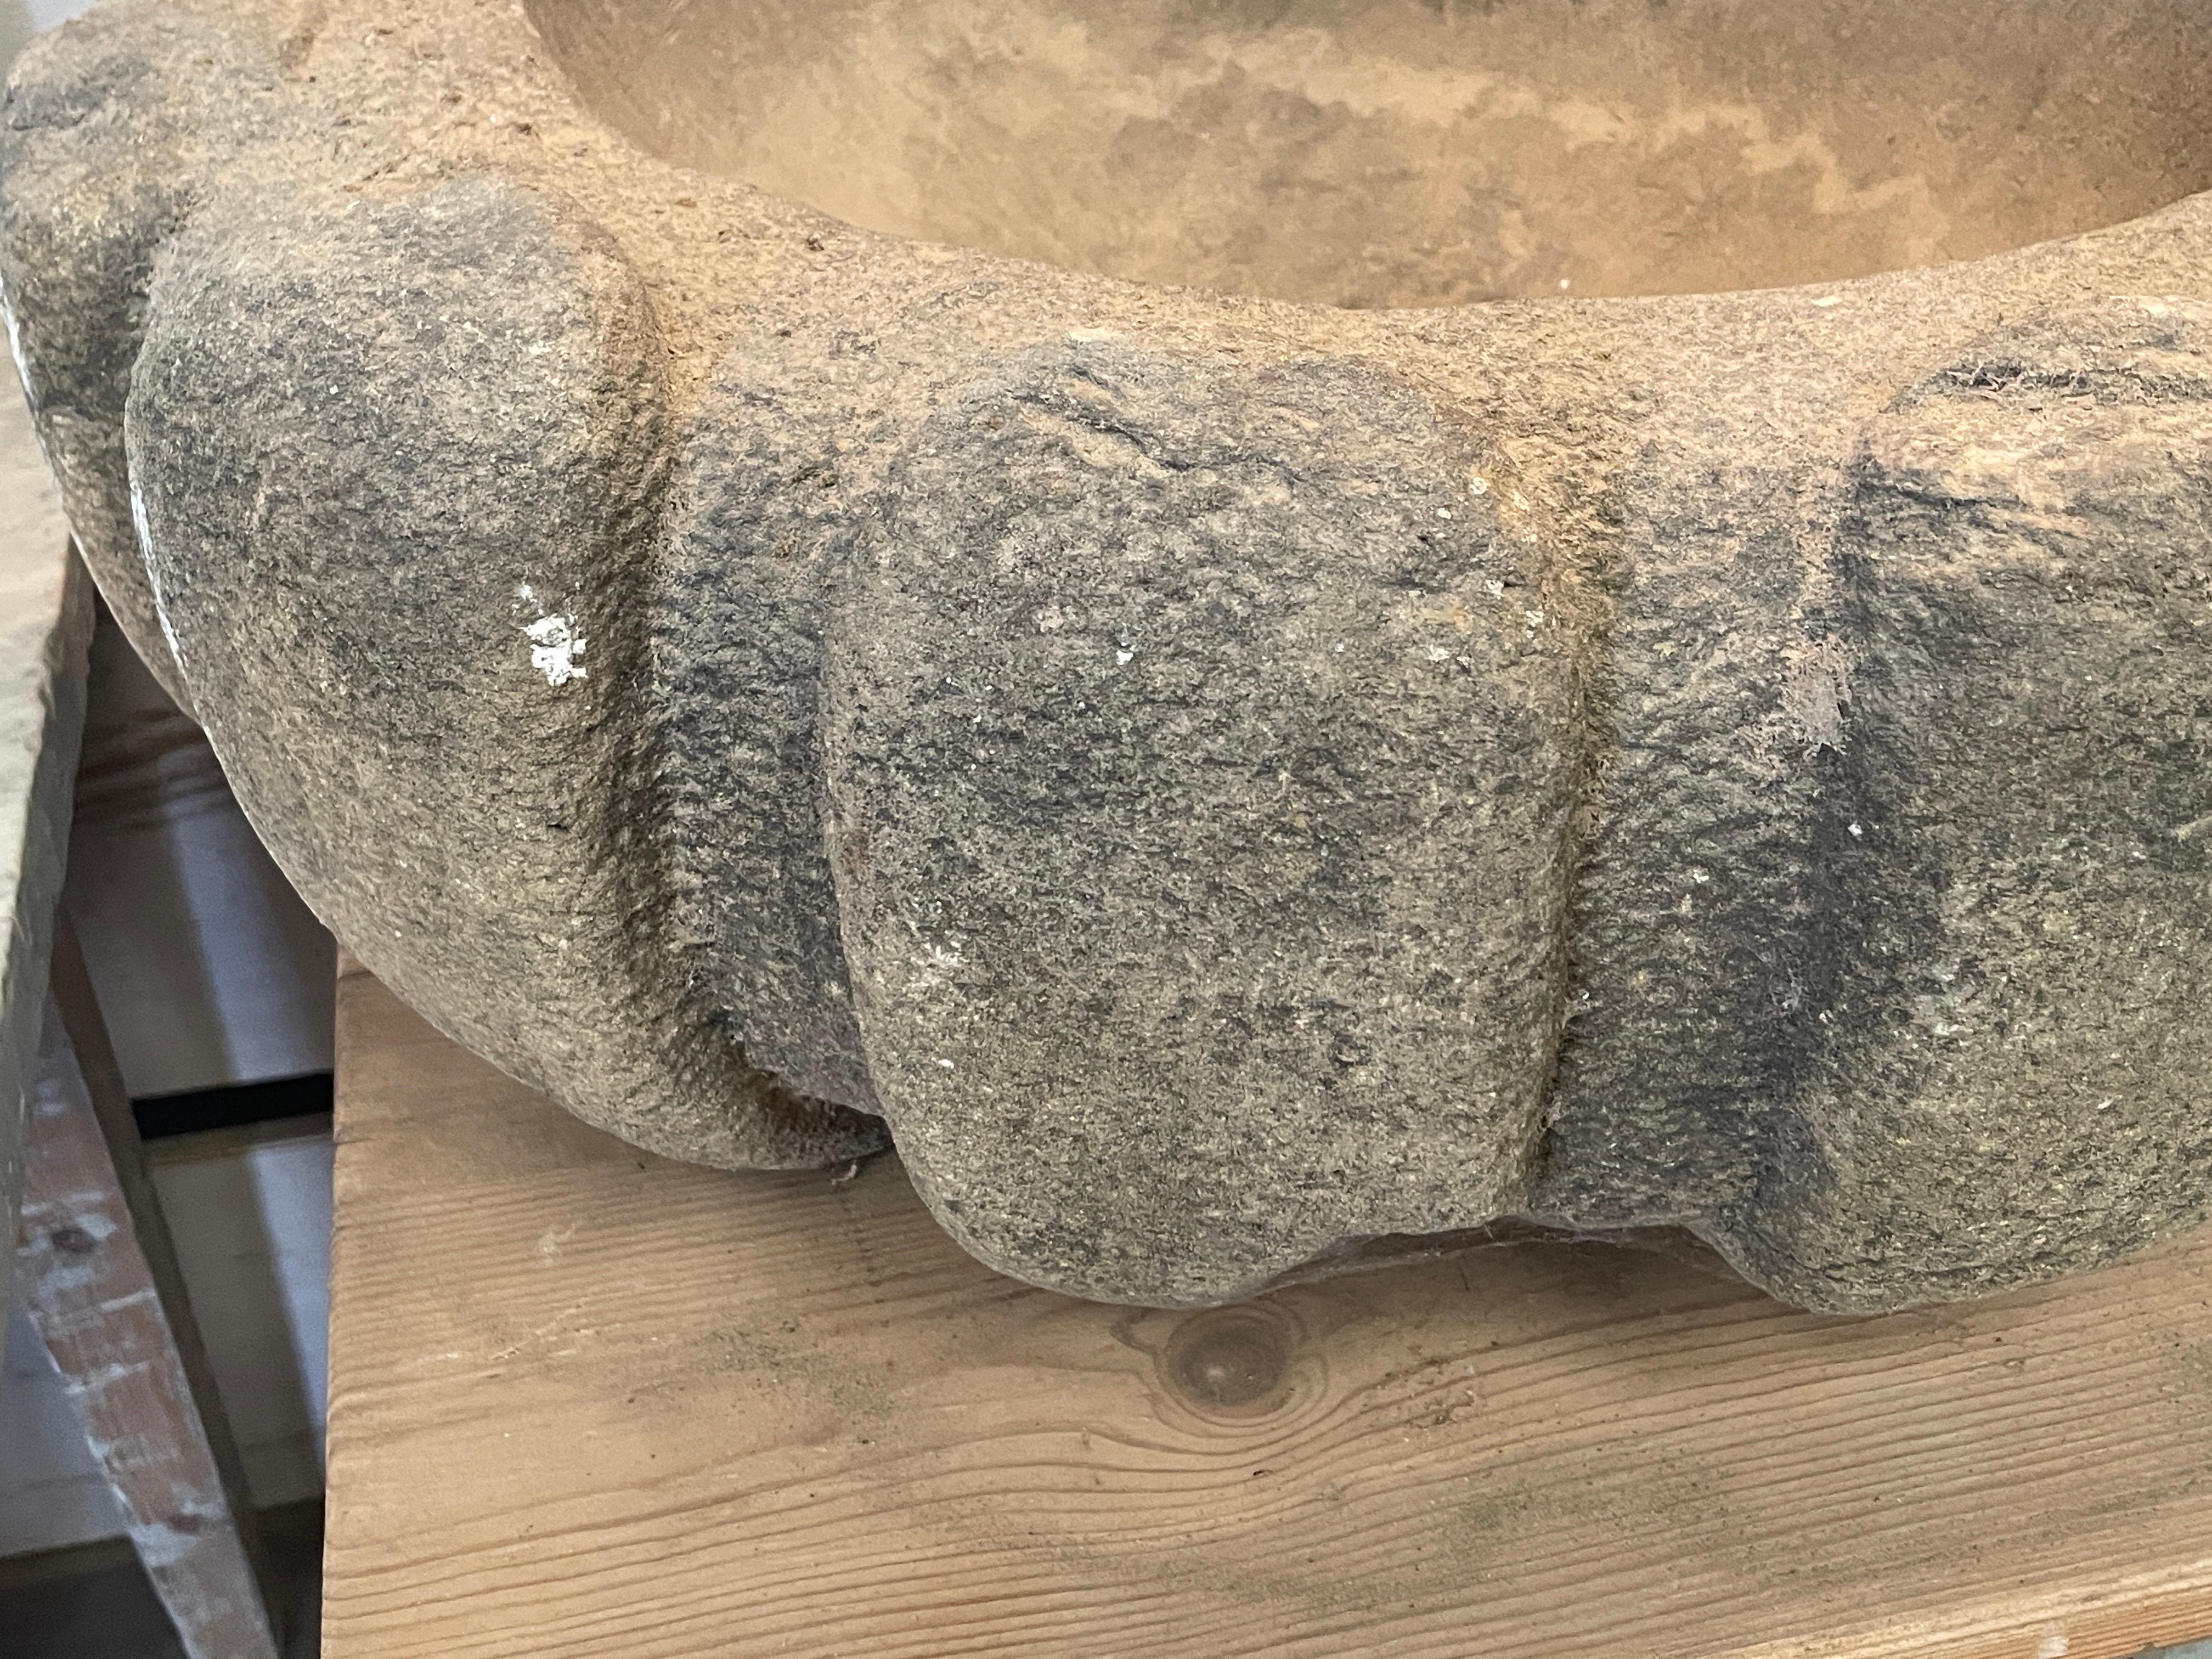 Cette paire rare de jardinières en granit a été trouvée dans une villa en Toscane.
Elles sont très lourdes et doivent être placées sur un piédestal solide pour supporter leur poids. Ils seraient également parfaits avec un groupe d'orchidées à